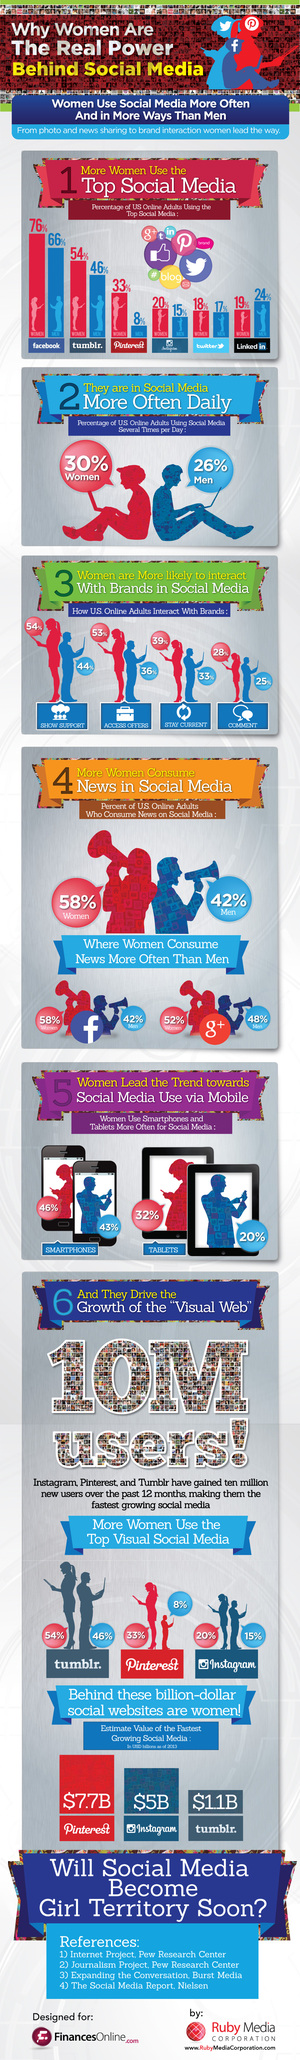 women-social-media